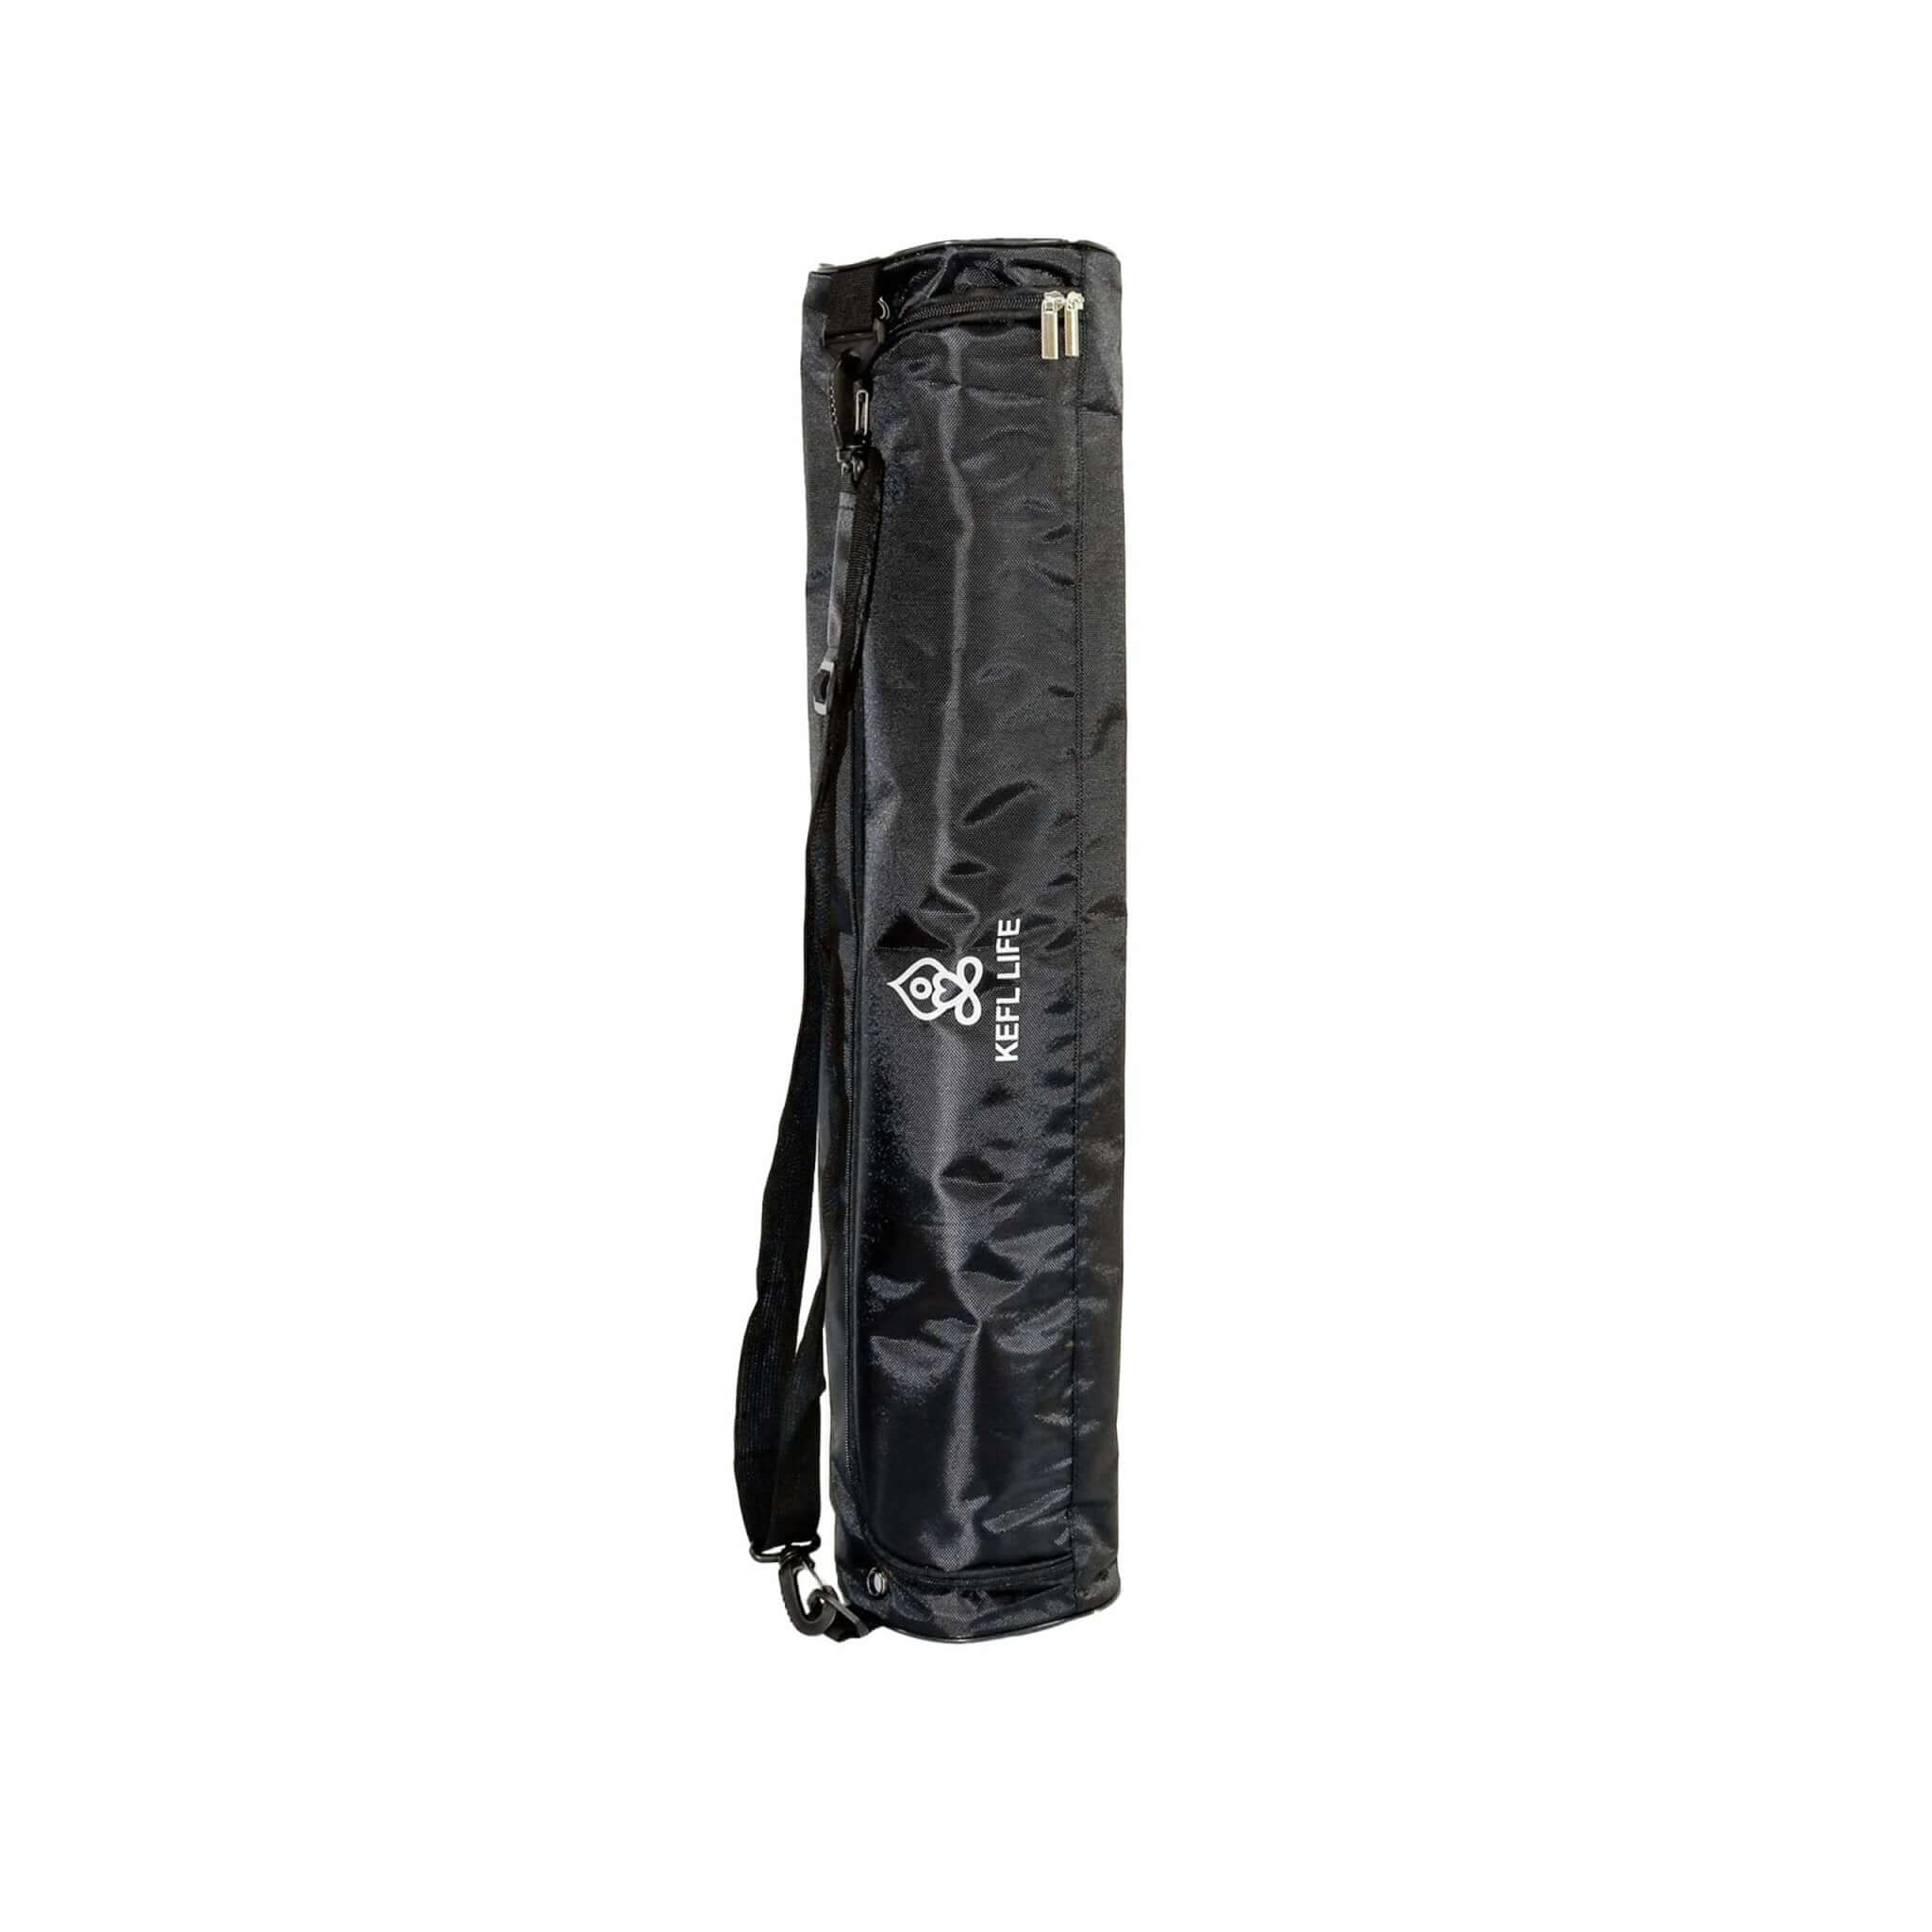 KEFL Oxford Yoga Mat Bag in Black - KEFLUK